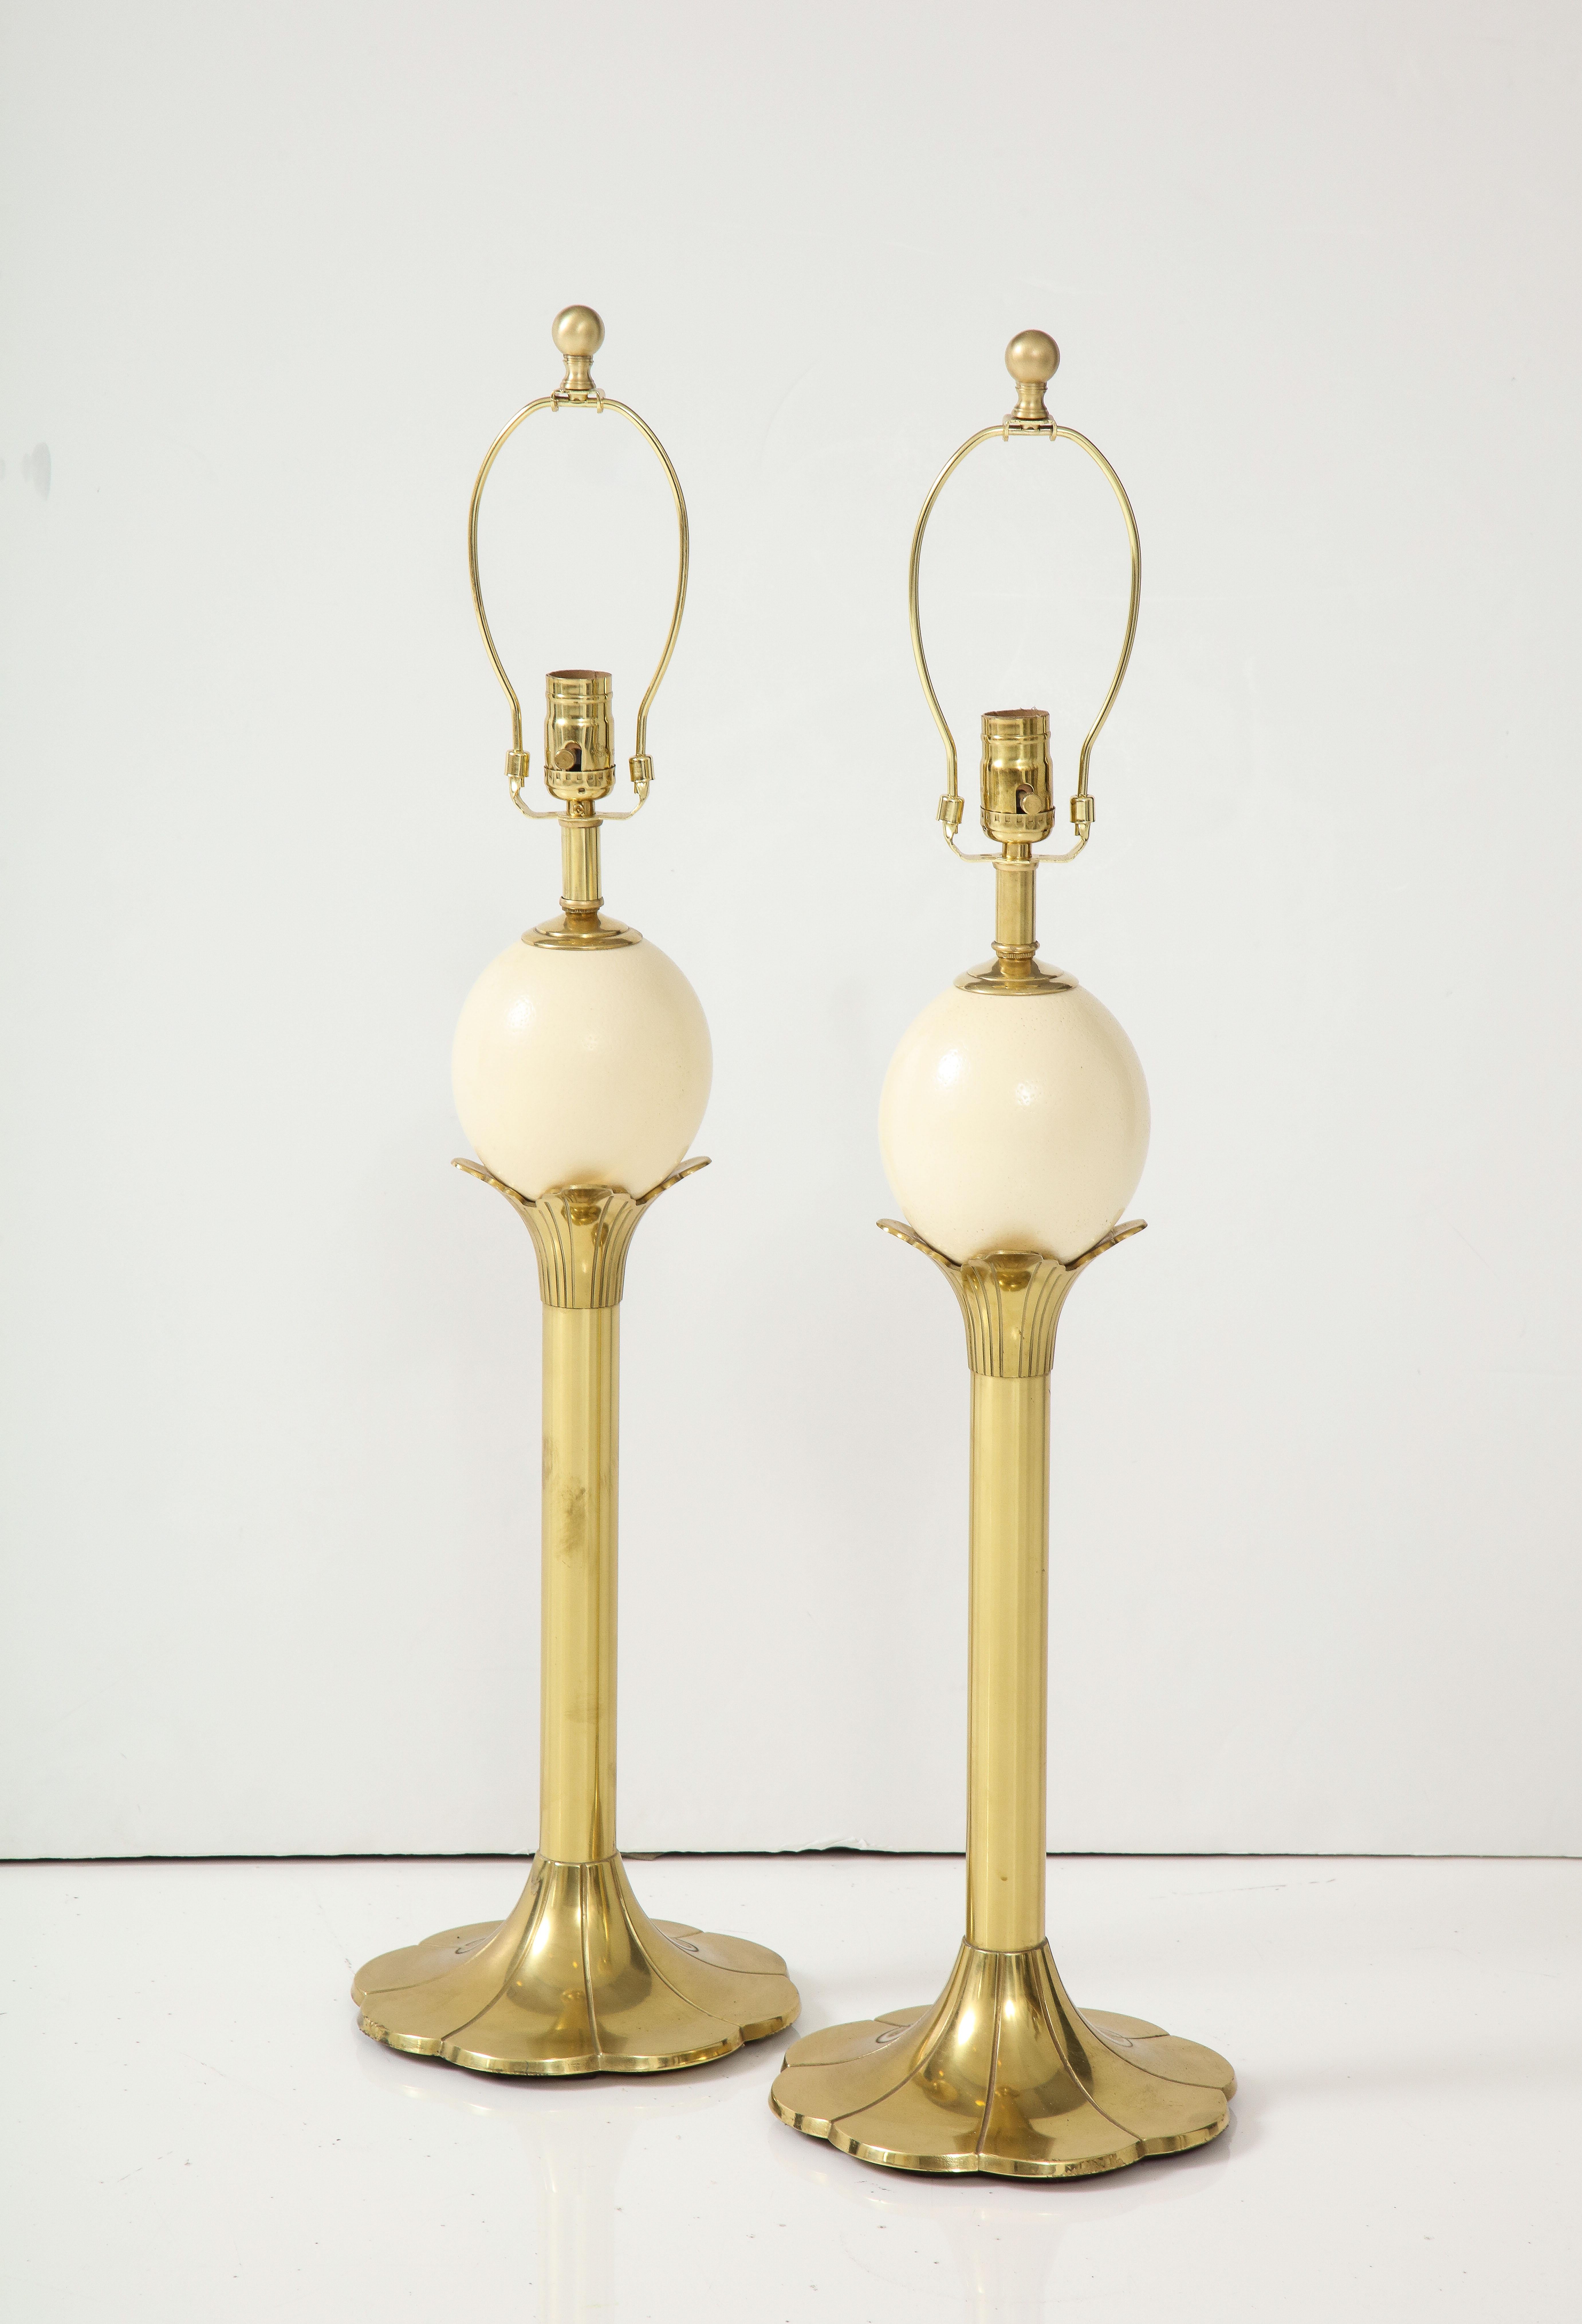 Ein Paar stilisierte Lampen in Form einer Palme aus Messing, gekrönt von einem echten Straußenei. Umverdrahtet für den Einsatz in den USA, max. 100 W.